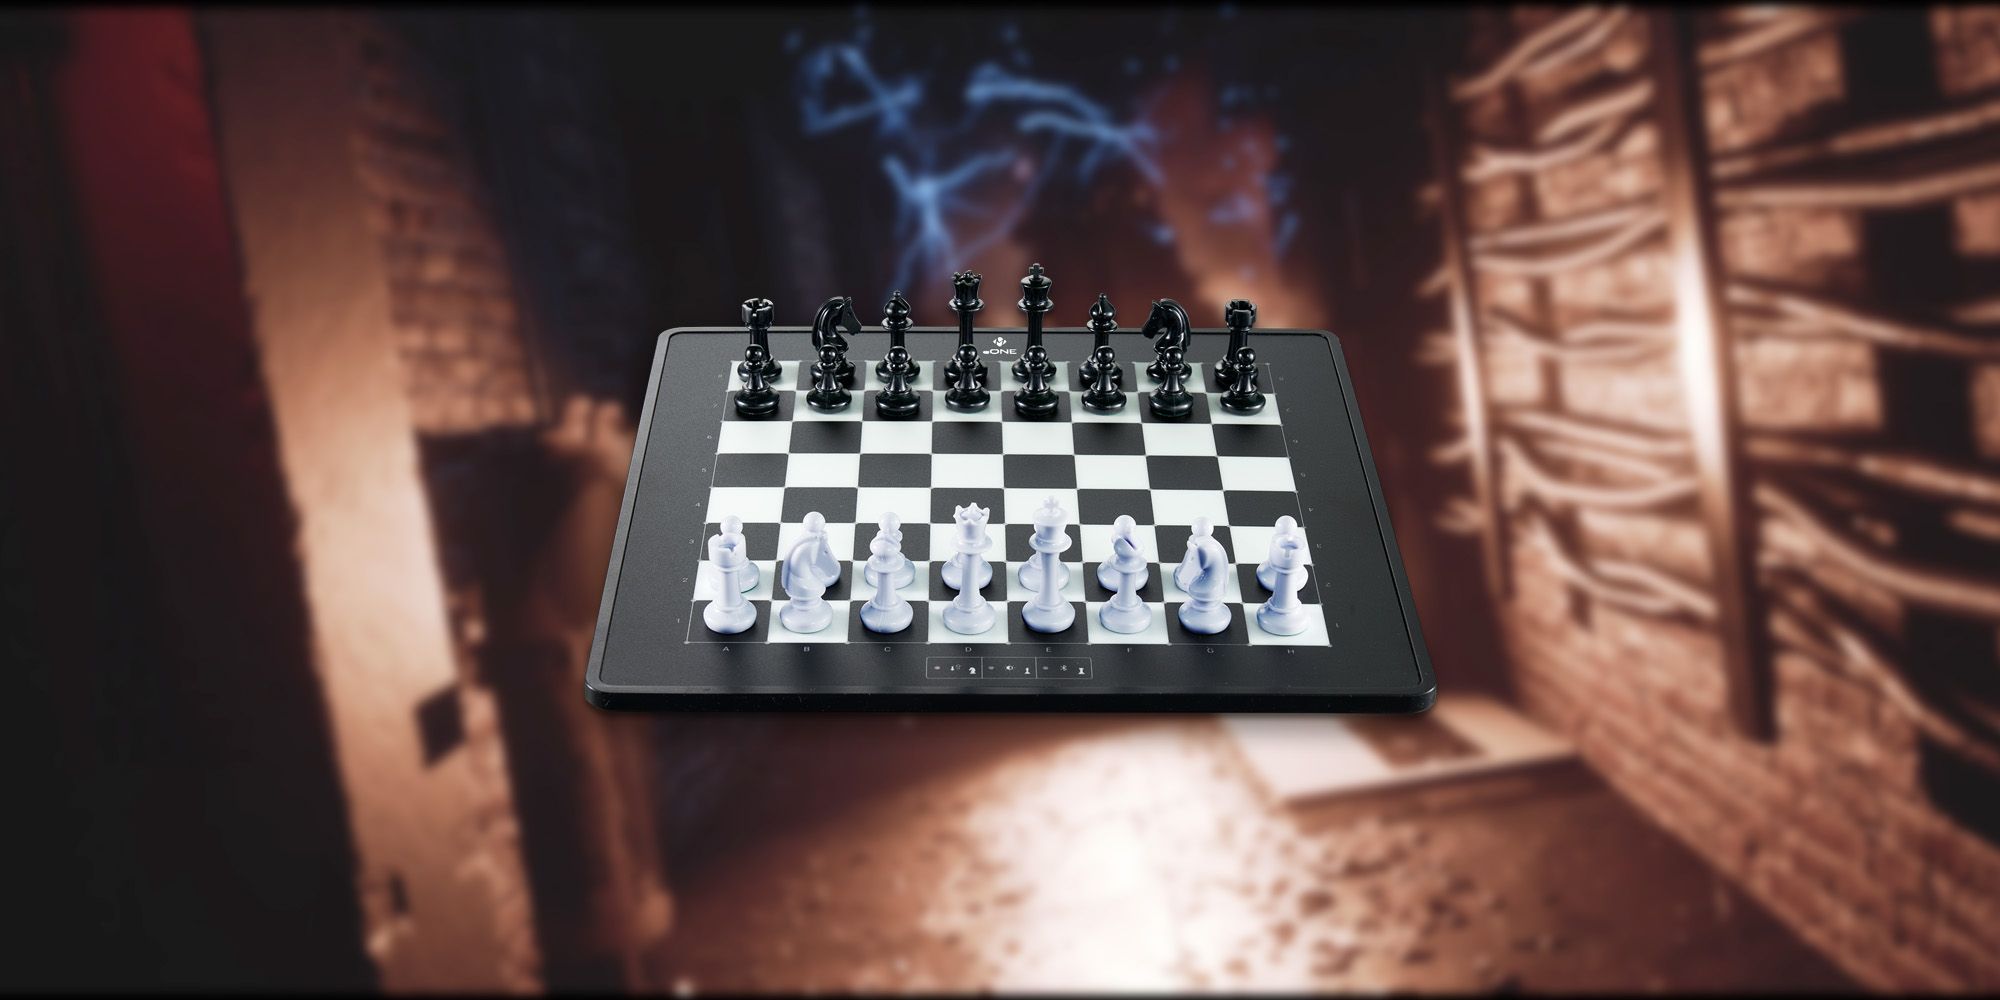 Fobia – St. Dinfna Hotel: Cómo resolver el rompecabezas de ajedrez